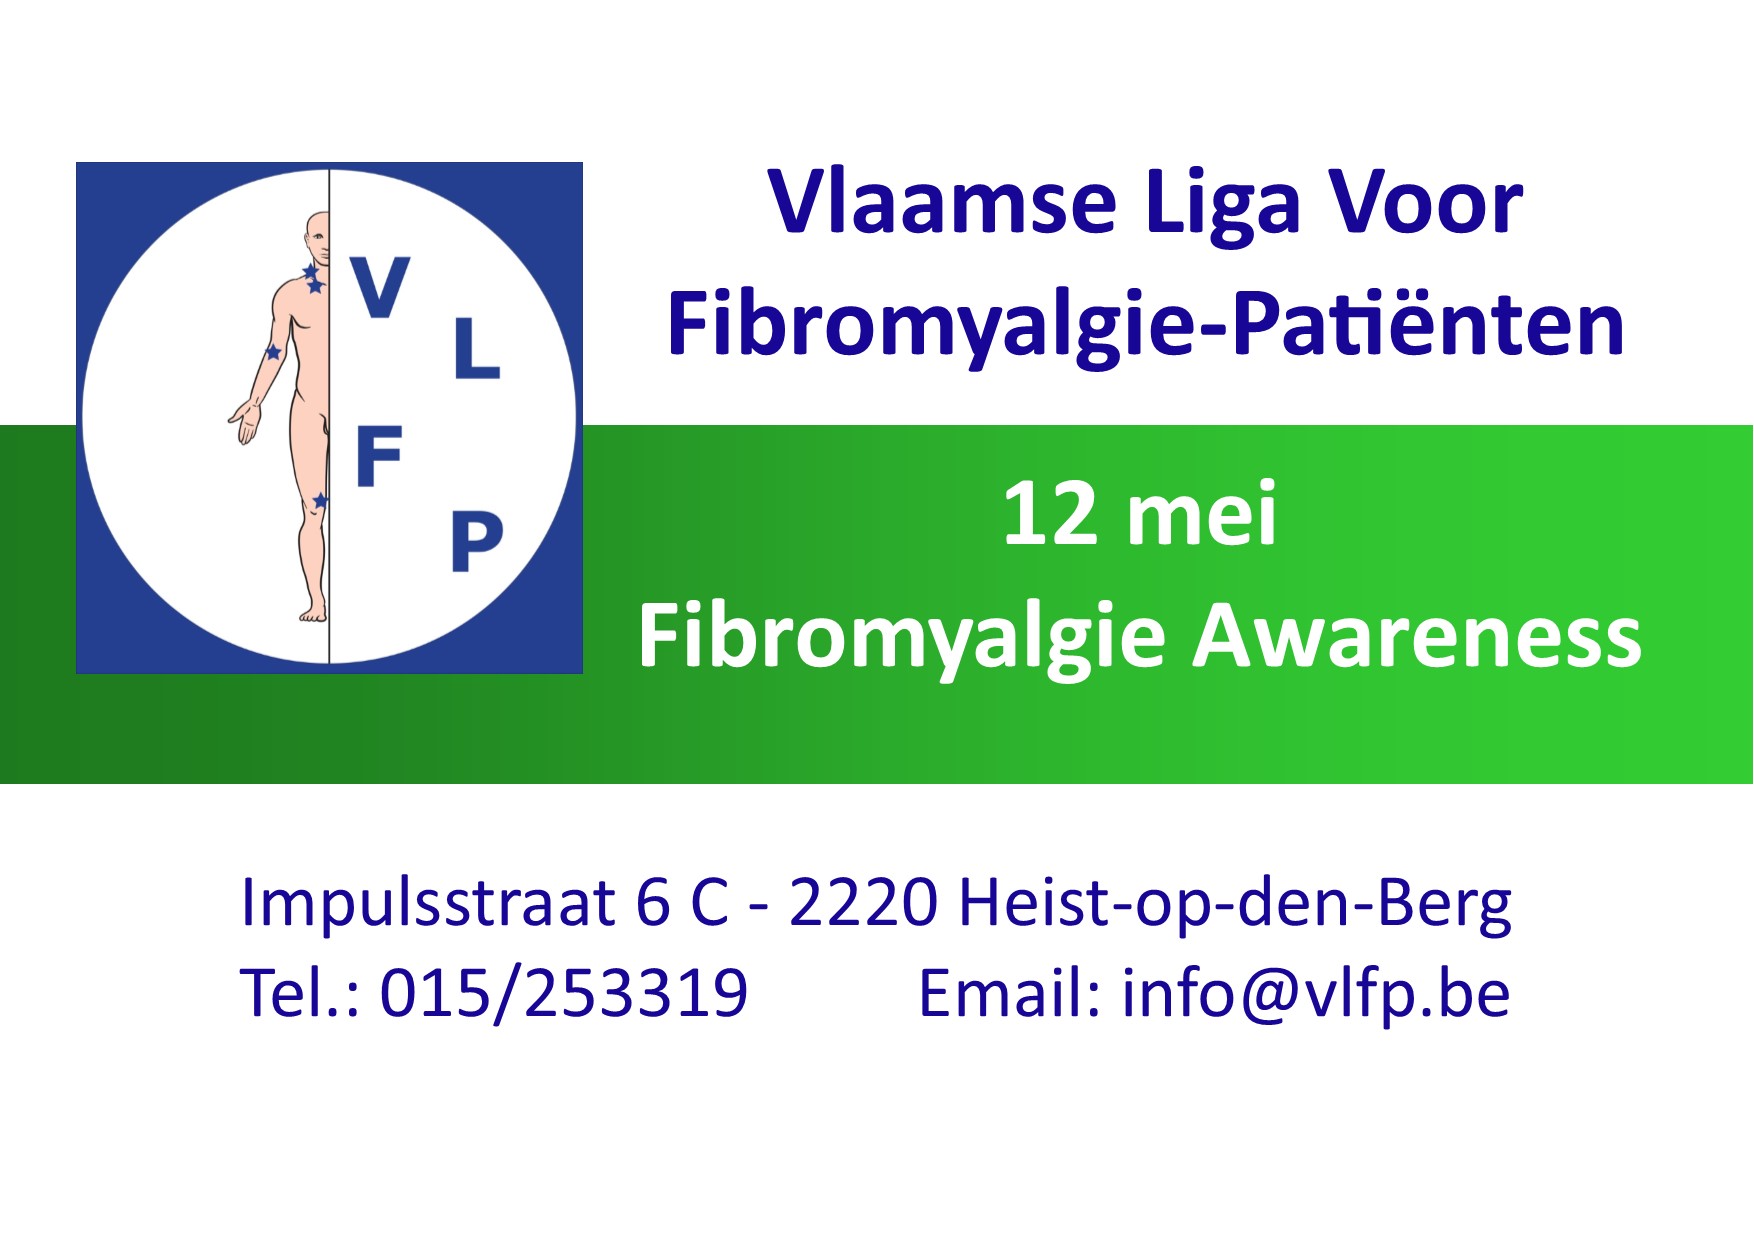 Vlaamse Liga voor Fibromyalgie-Patiënten